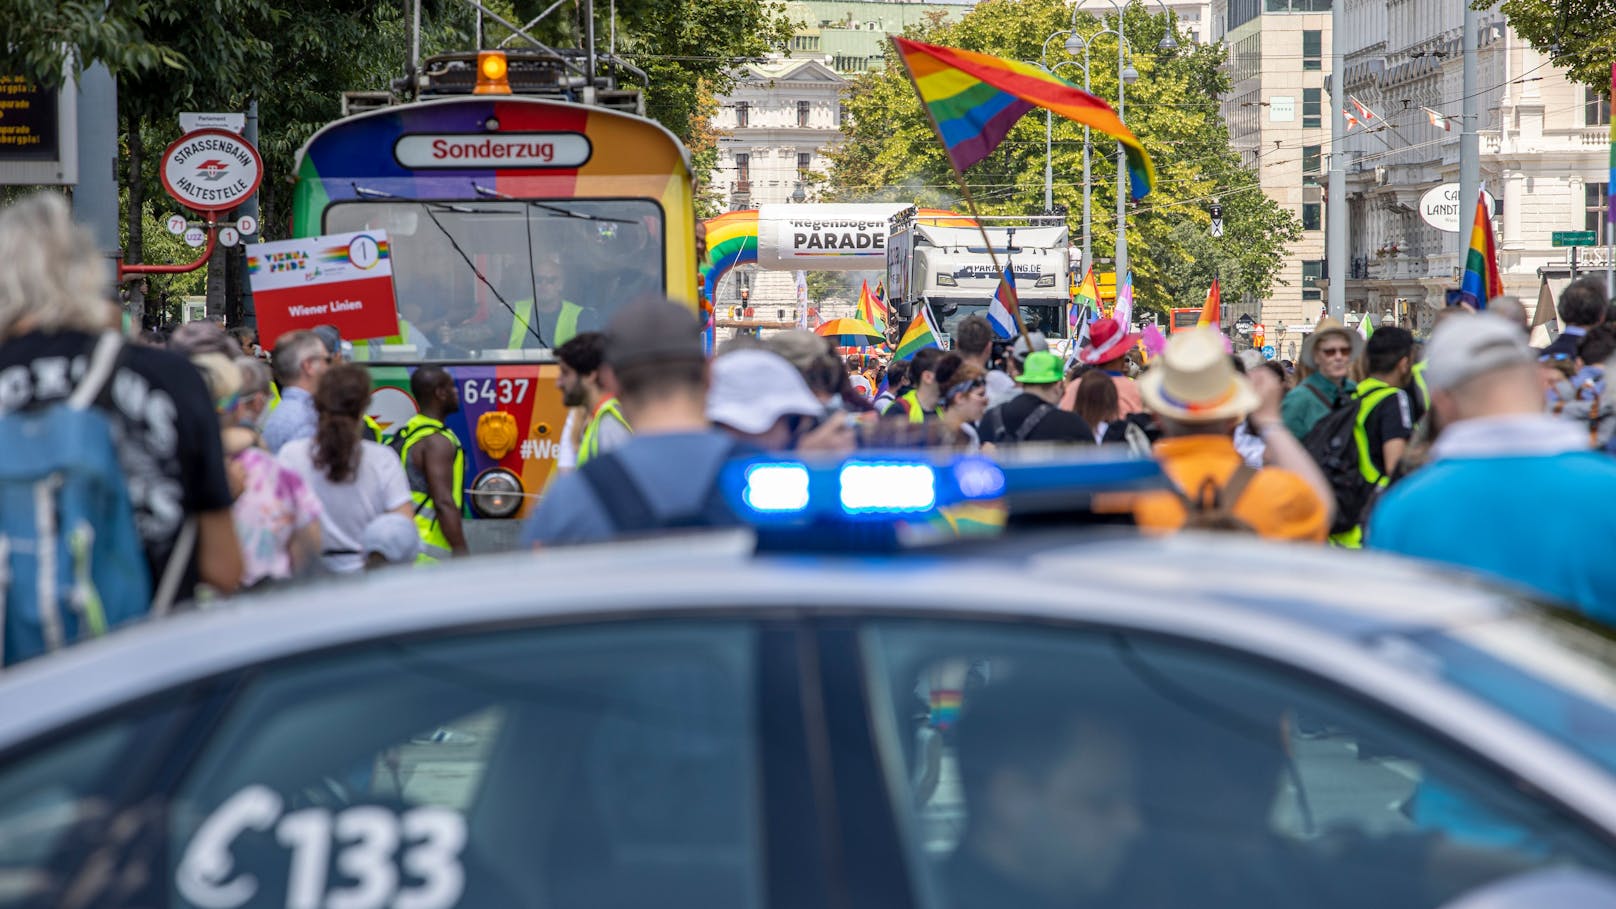 Pride-Anschlag mit Messern und Auto in Chat geplant